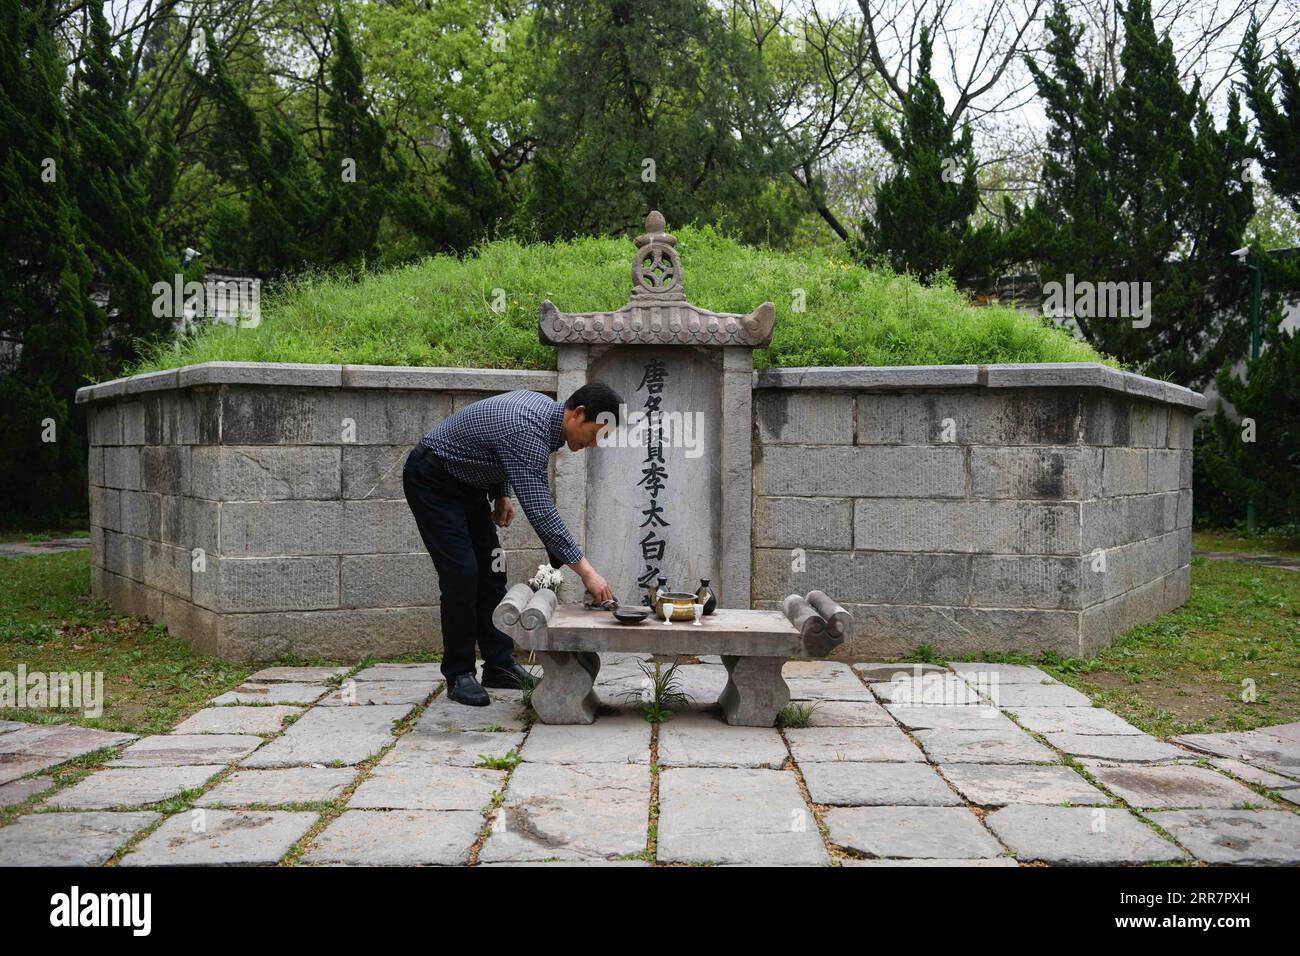 210402 -- DANGTU, 2 aprile 2021 -- GU Changxin pulisce l'altare della tomba di li Bai nel parco culturale li Bai nella contea di Dangtu della città di Maanshan, nella provincia di Anhui della Cina orientale, 31 marzo 2021. La tomba di li Bai, un famoso poeta della dinastia Tang 618-907, si trova ai piedi del monte Qingshan nella contea di Dangtu nella città di Maanshan. Dopo la morte di li Bai a Dangtu, il suo buon amico GU Lanxin offrì la sua terra come luogo di sepoltura di li Bai. Da allora, la famiglia GU è diventata custode della tomba di li Bai, che continua ancora oggi. Nel 1985, il diciottenne GU Changxin divenne il custode di tombe della 49a generazione. Per mor Foto Stock